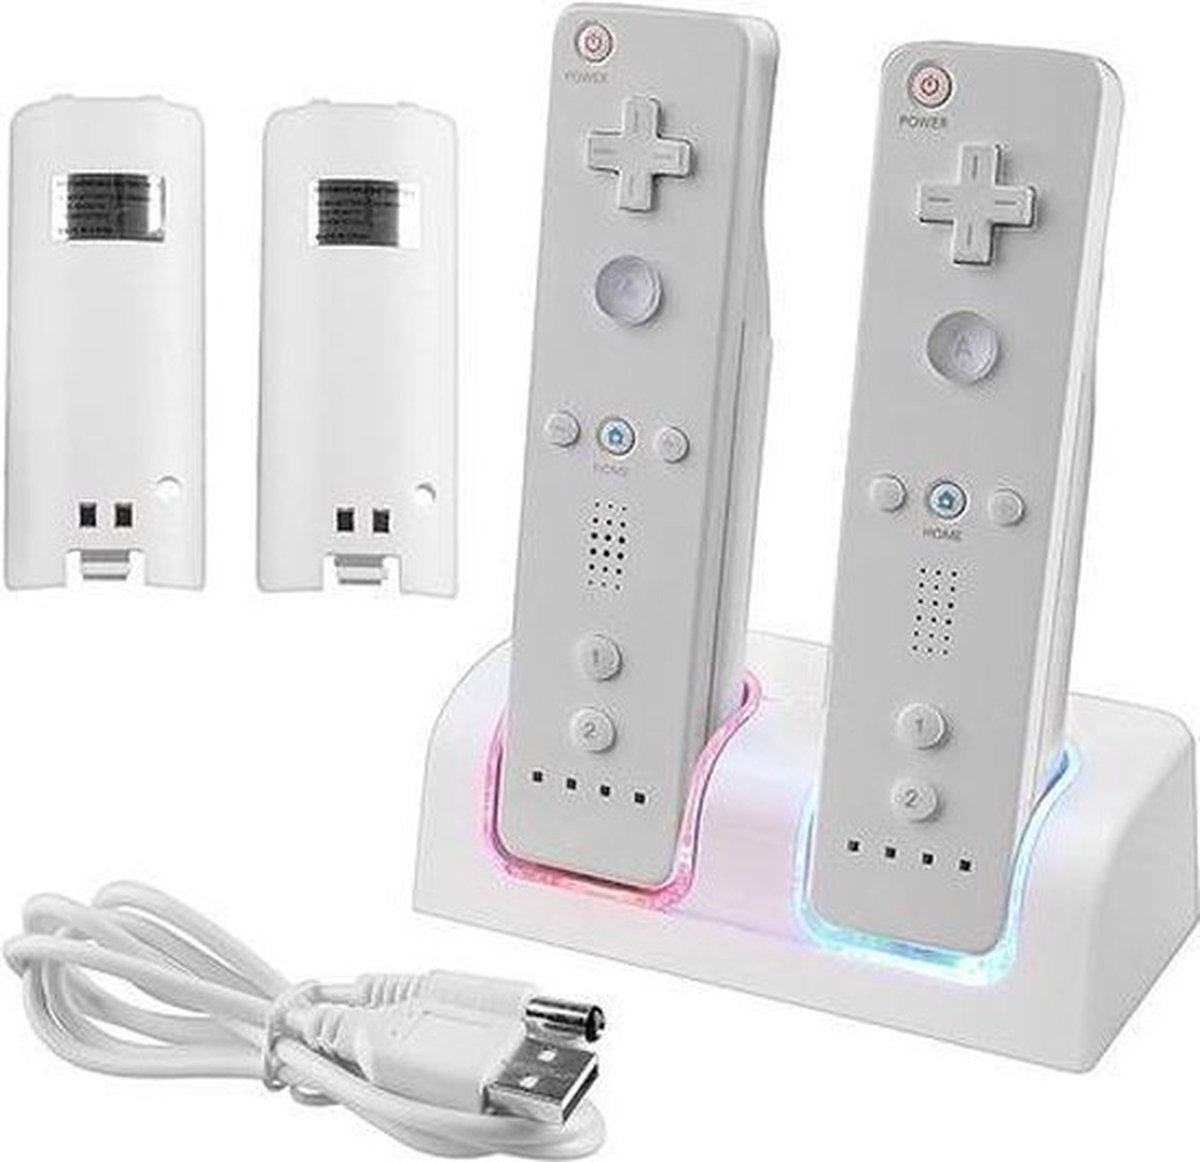 Dock Charger Station Voor De Nintendo Wii Controller Dock - USB Docking Met Batterij Accu Pack - Op Laadstation - AA Commerce